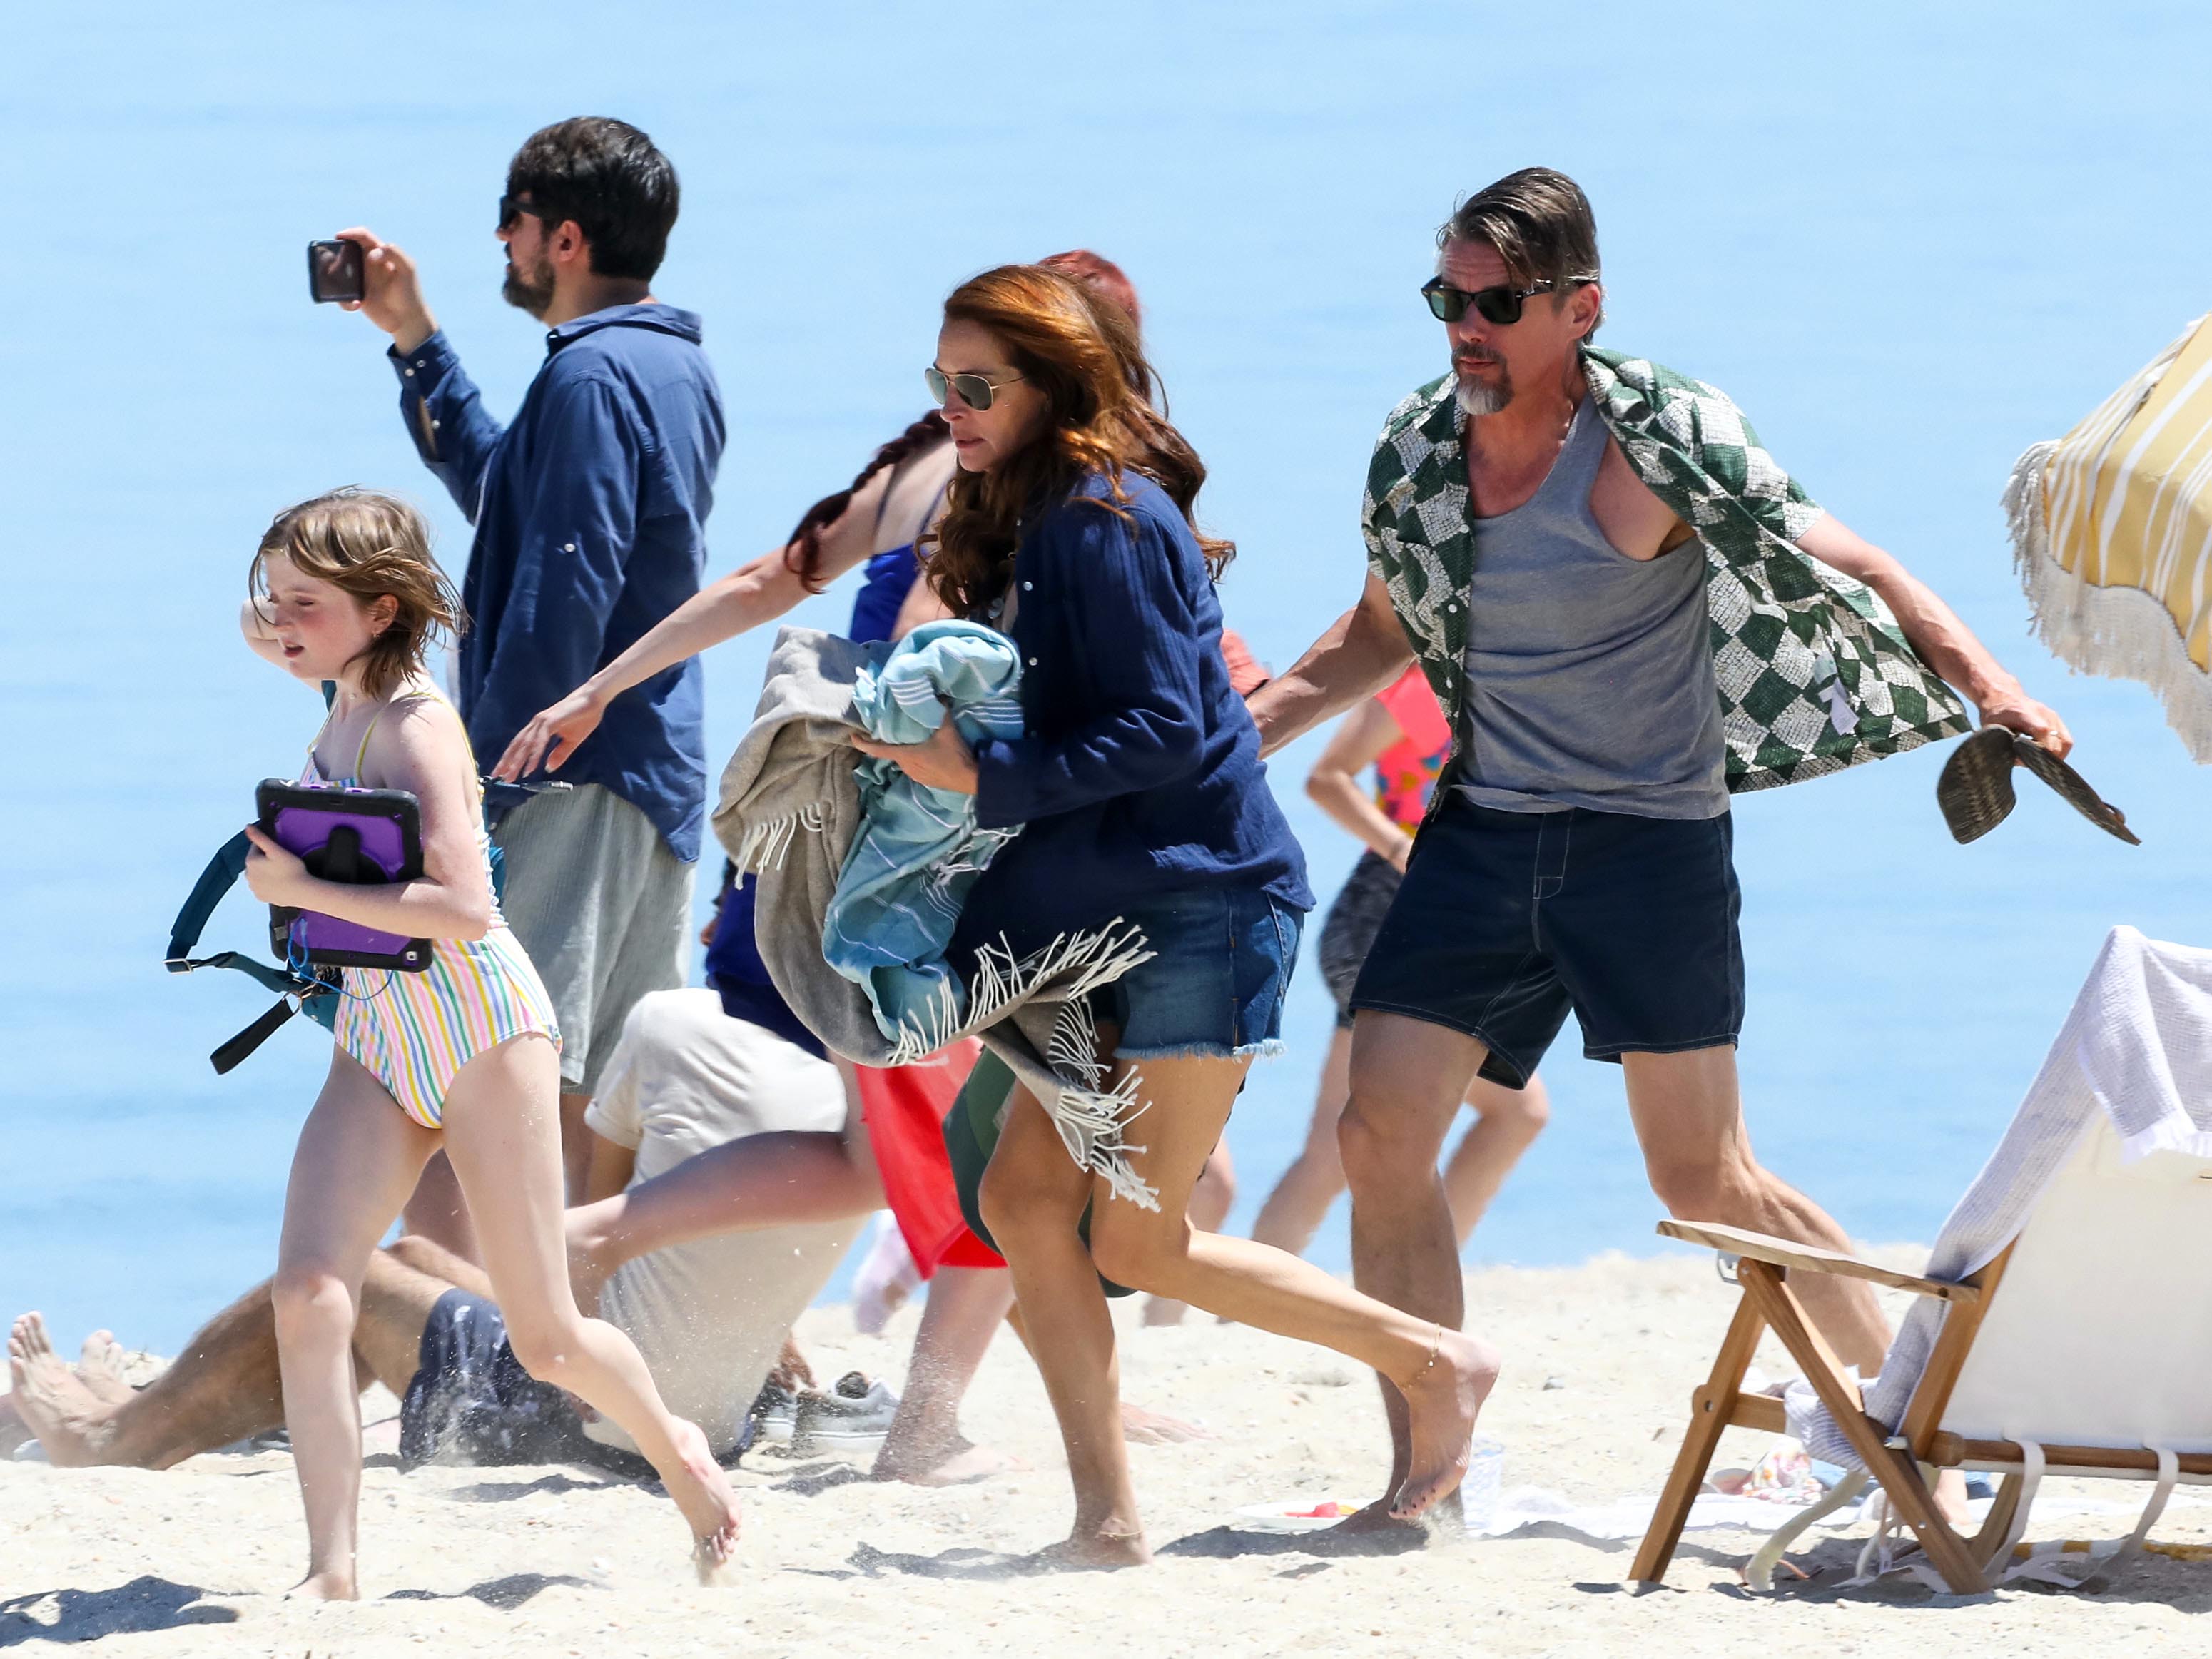 Día de trabajo. Julia Roberts e Ethan Hawke fueron fotografiados en pleno rodaje mientras filmaban una dramática escena en la playa de Sunken Beach Parkway, en Nueva York, para "Leave the World Behind"